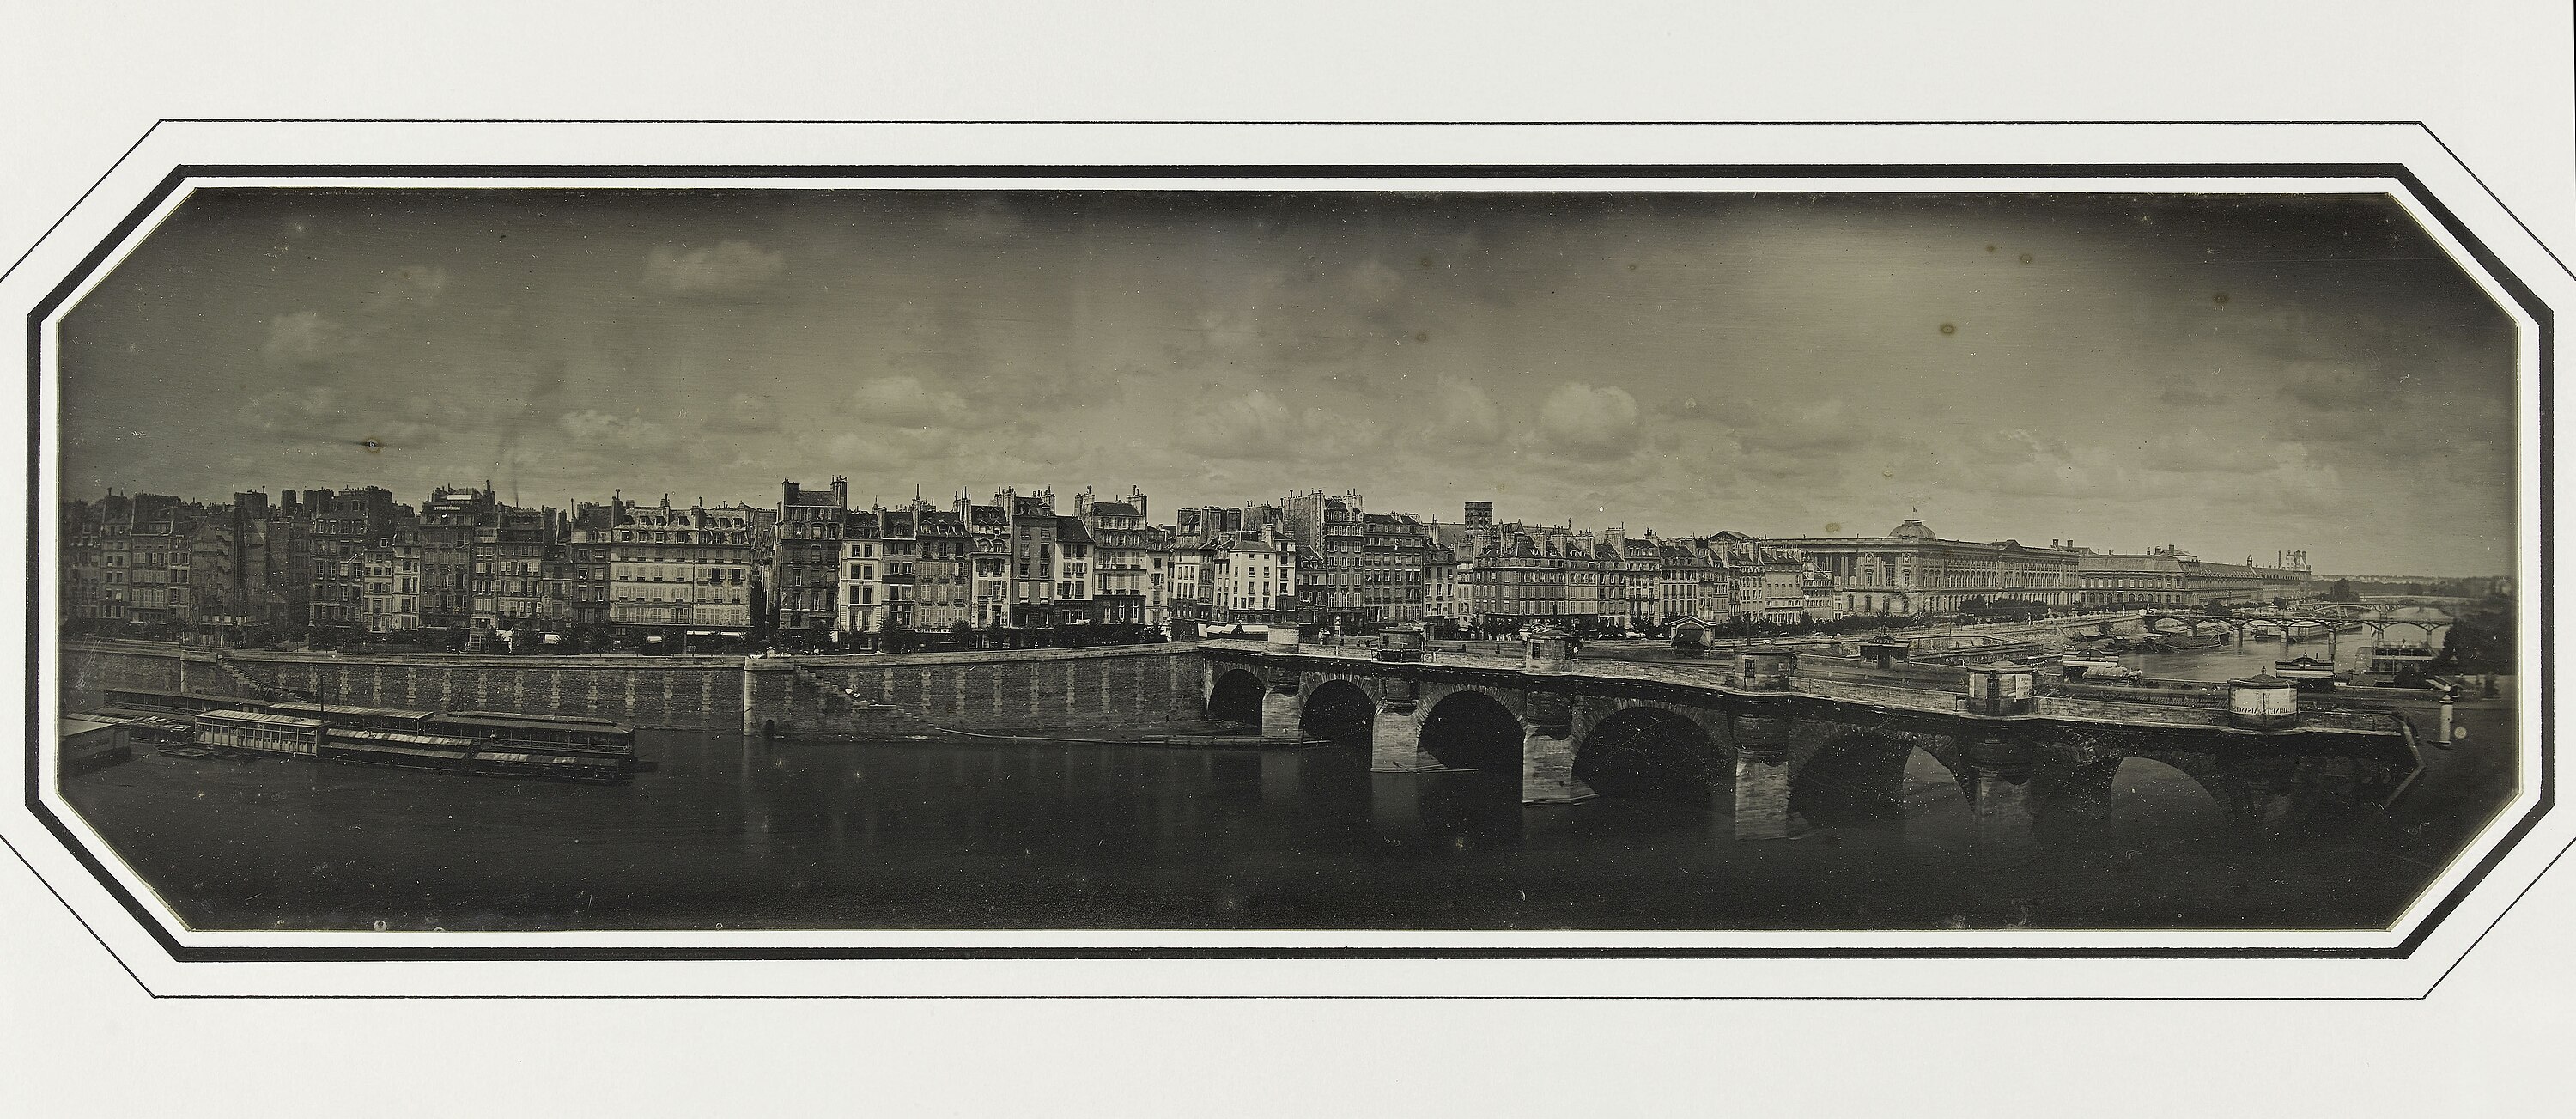 Panorama, vue inversée par rapport à la réalité. Le Pont-Neuf, le Louvre et le quai de la Mégisserie